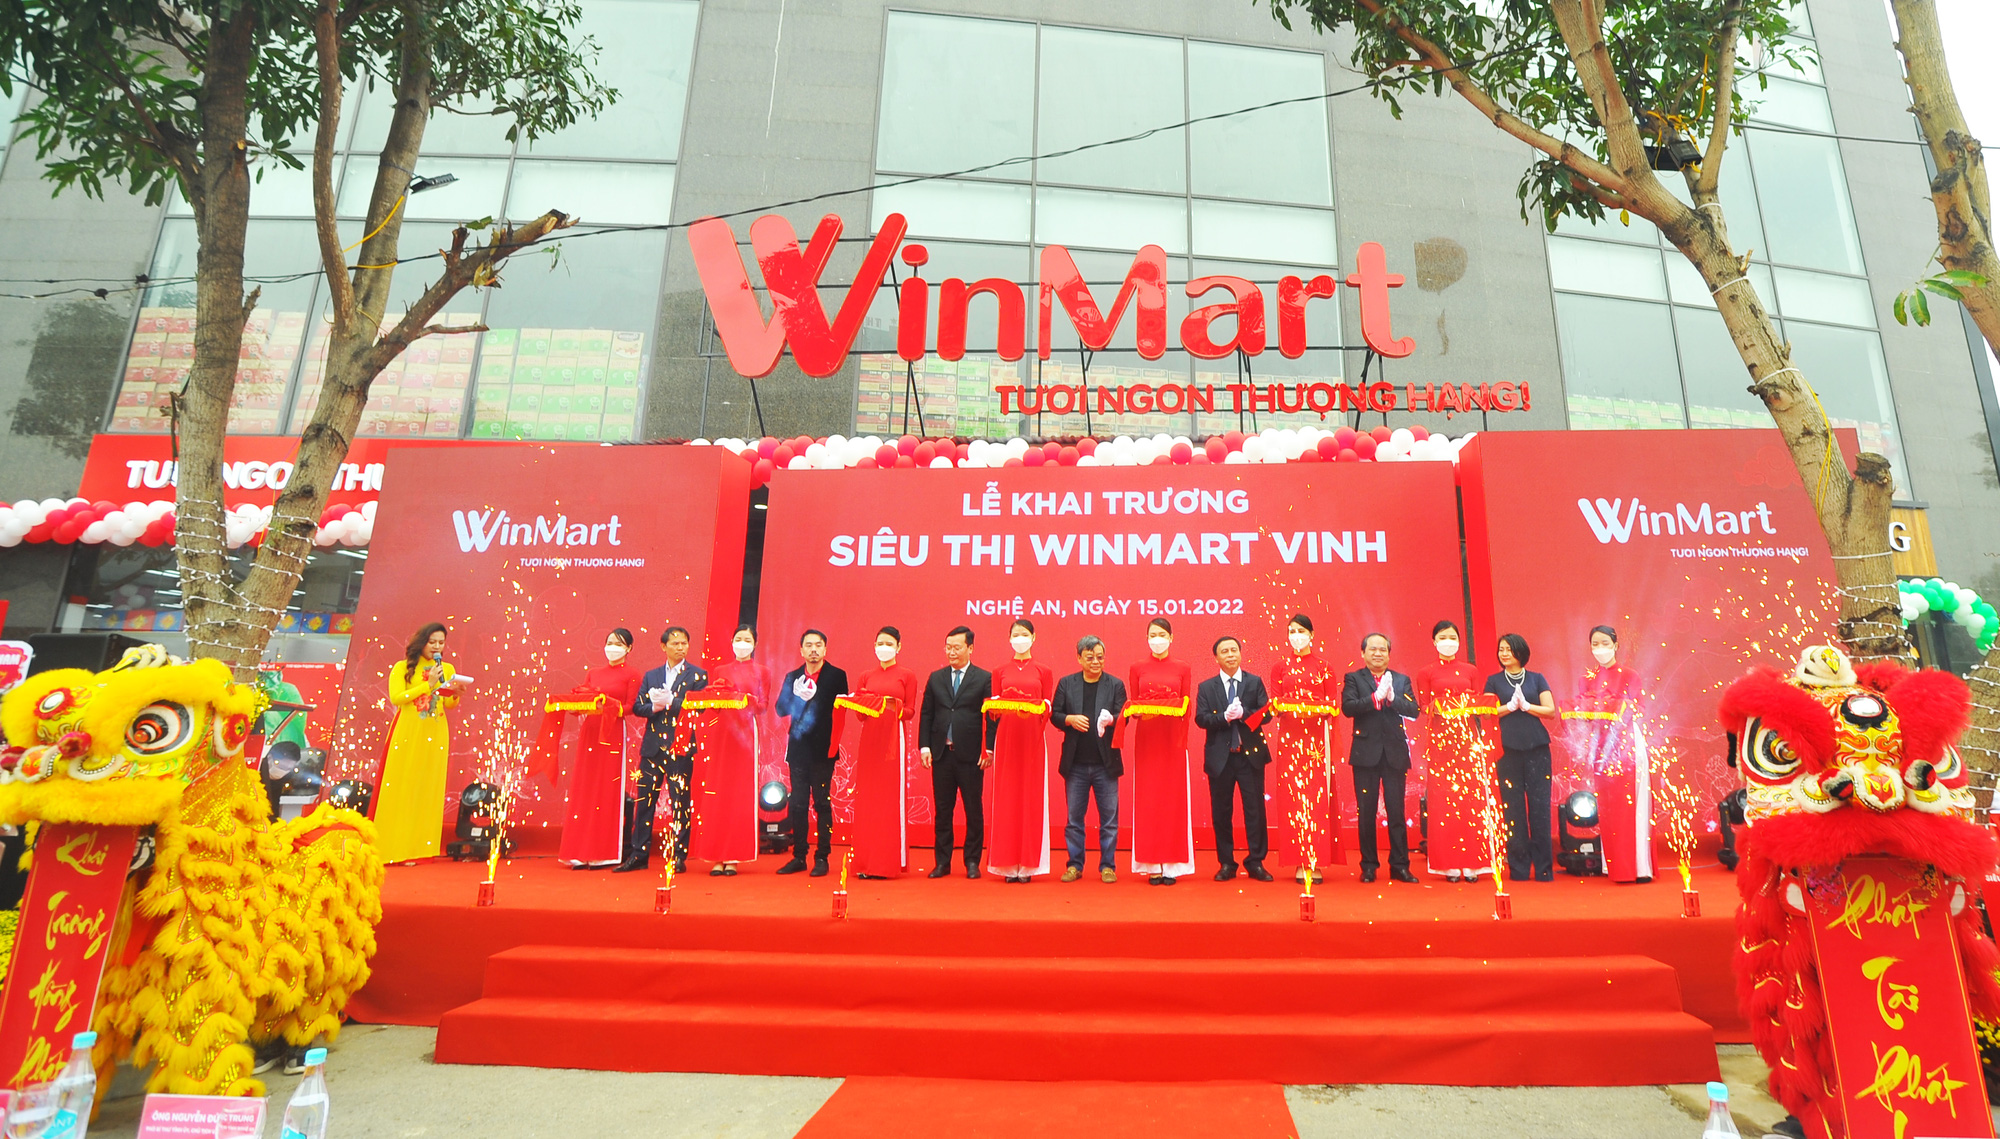 Chính thức đổi tên hệ thống siêu thị Vinmart thành Winmart - Ảnh 3.